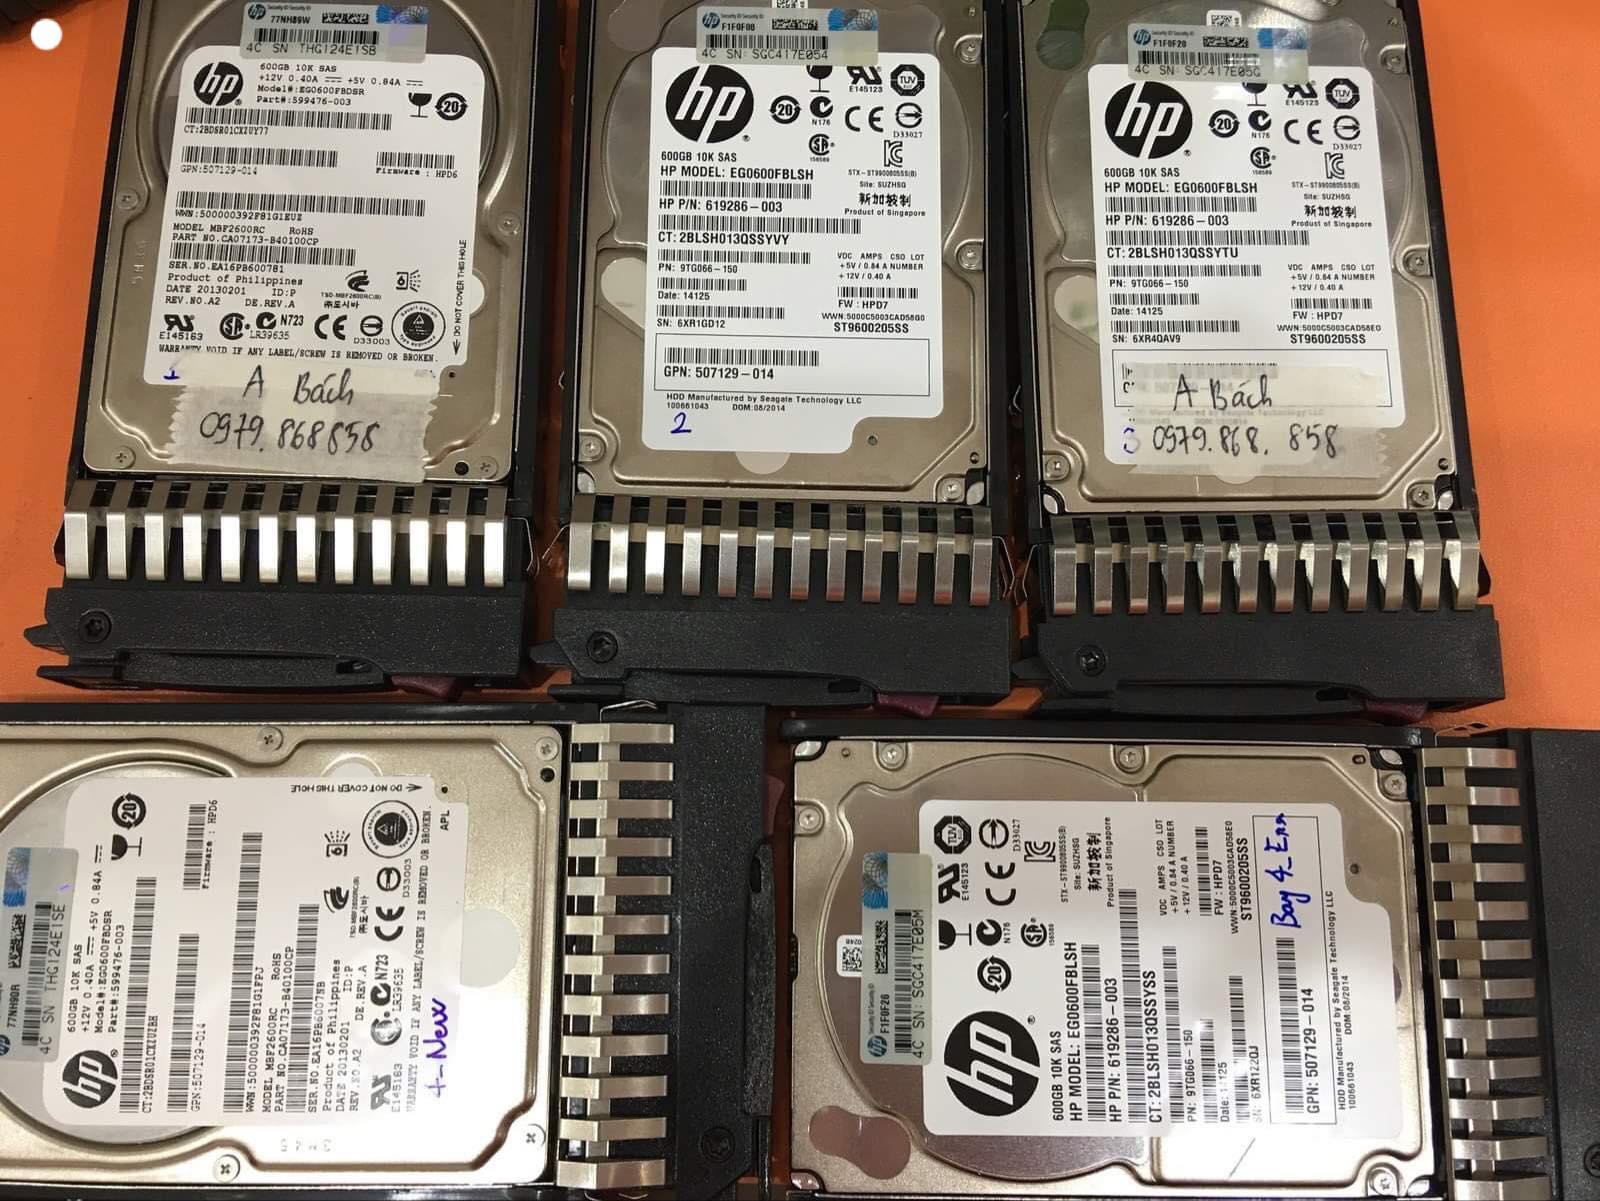 Khôi phục dữ liệu máy chủ HP với 5HDDx600GB lỗi 2HDD 20/07/2019 - cuumaytinh